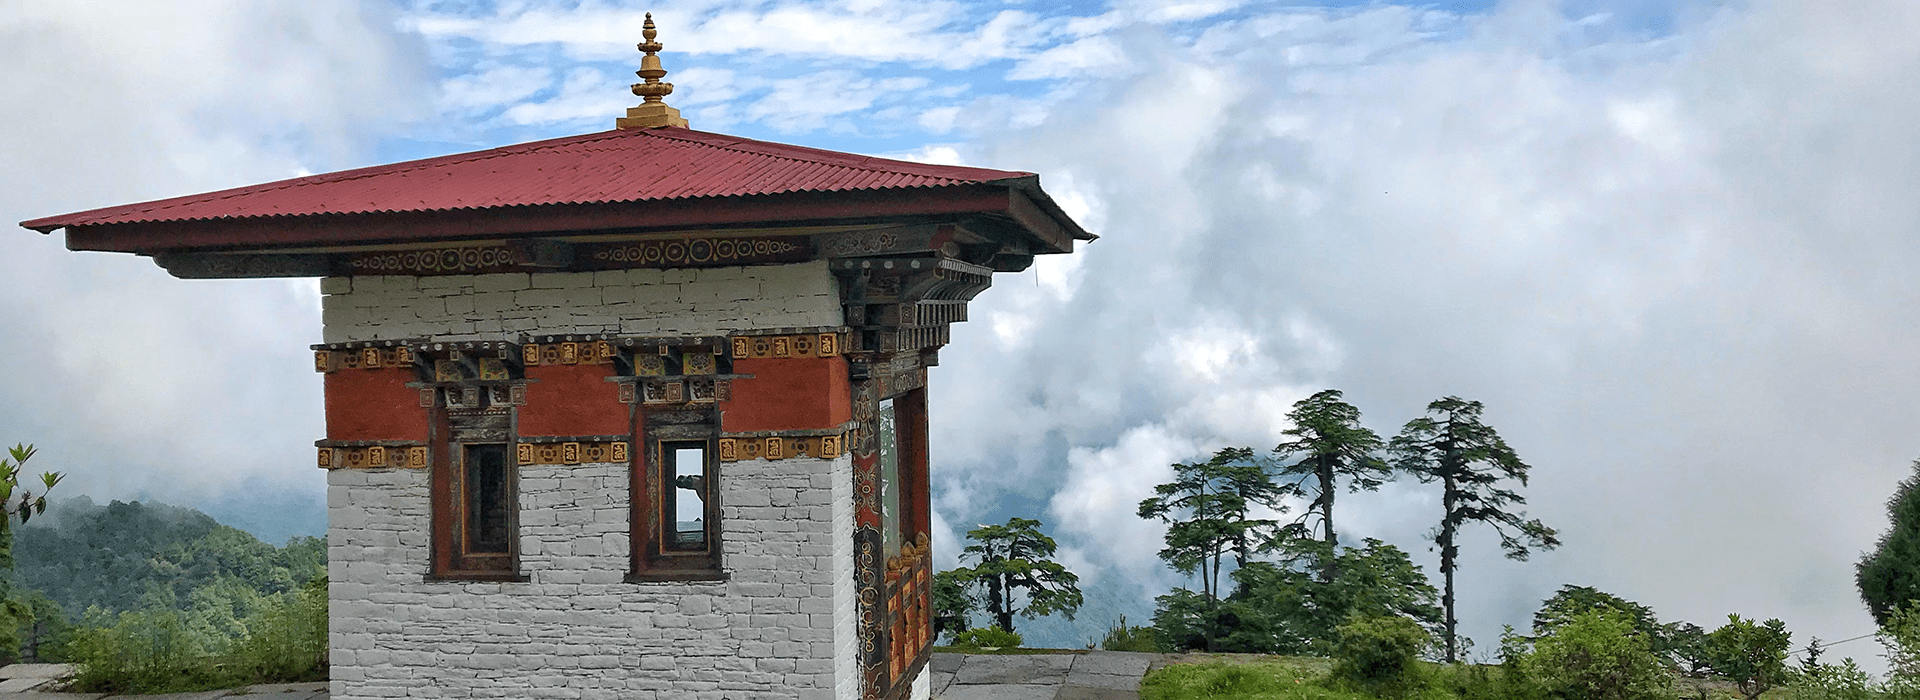 BHUTAN HONEYMOON TRIP